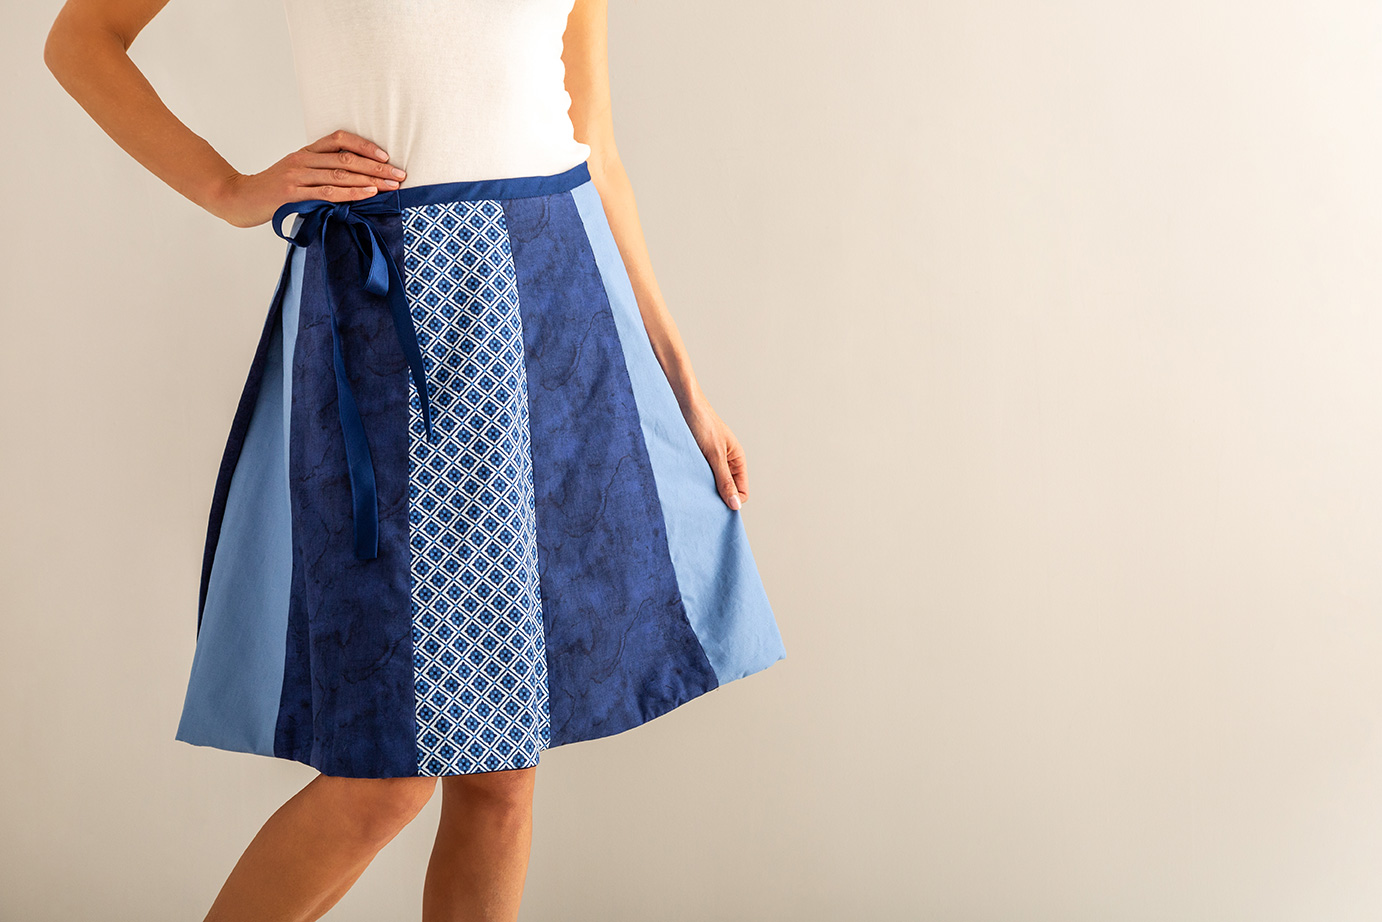 Skirt Made with Cricut Maker